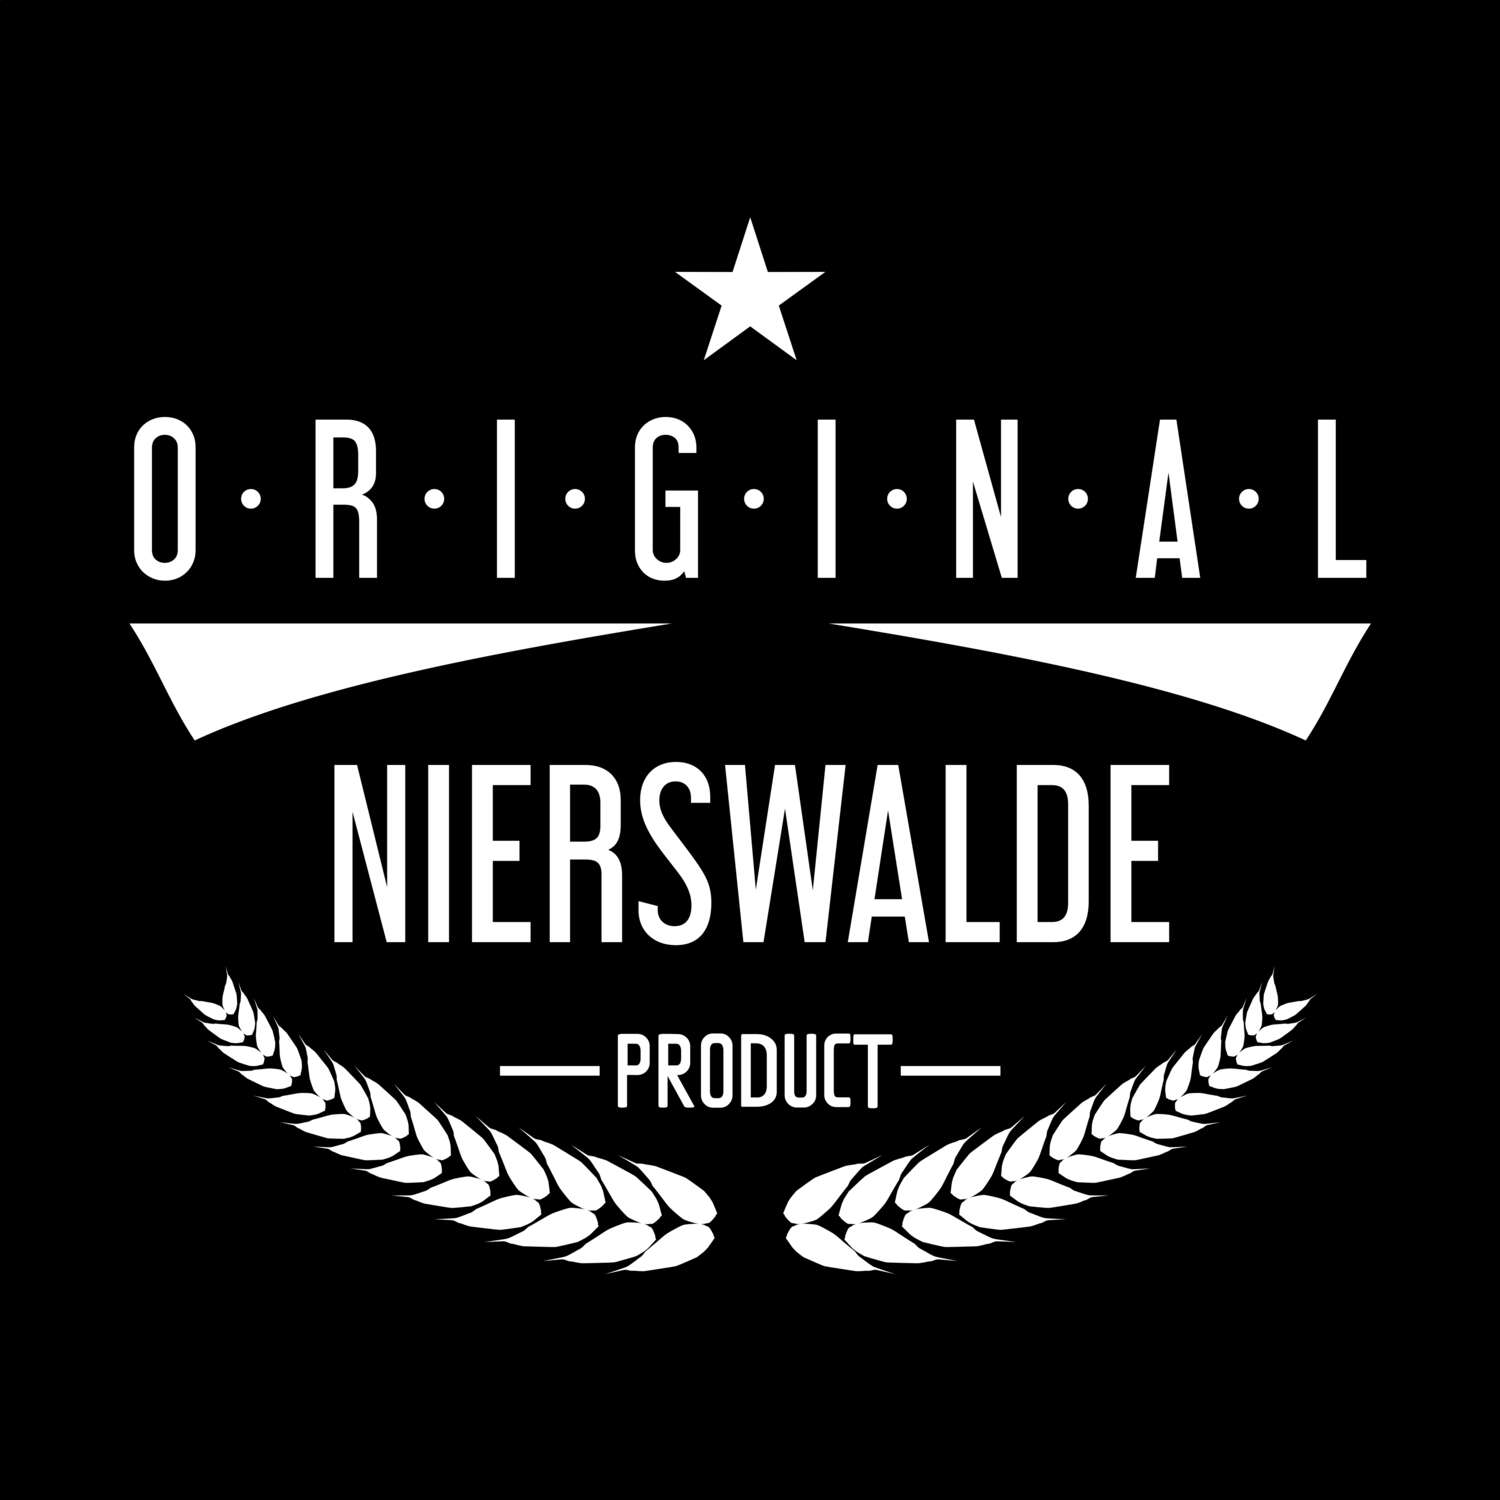 Nierswalde T-Shirt »Original Product«